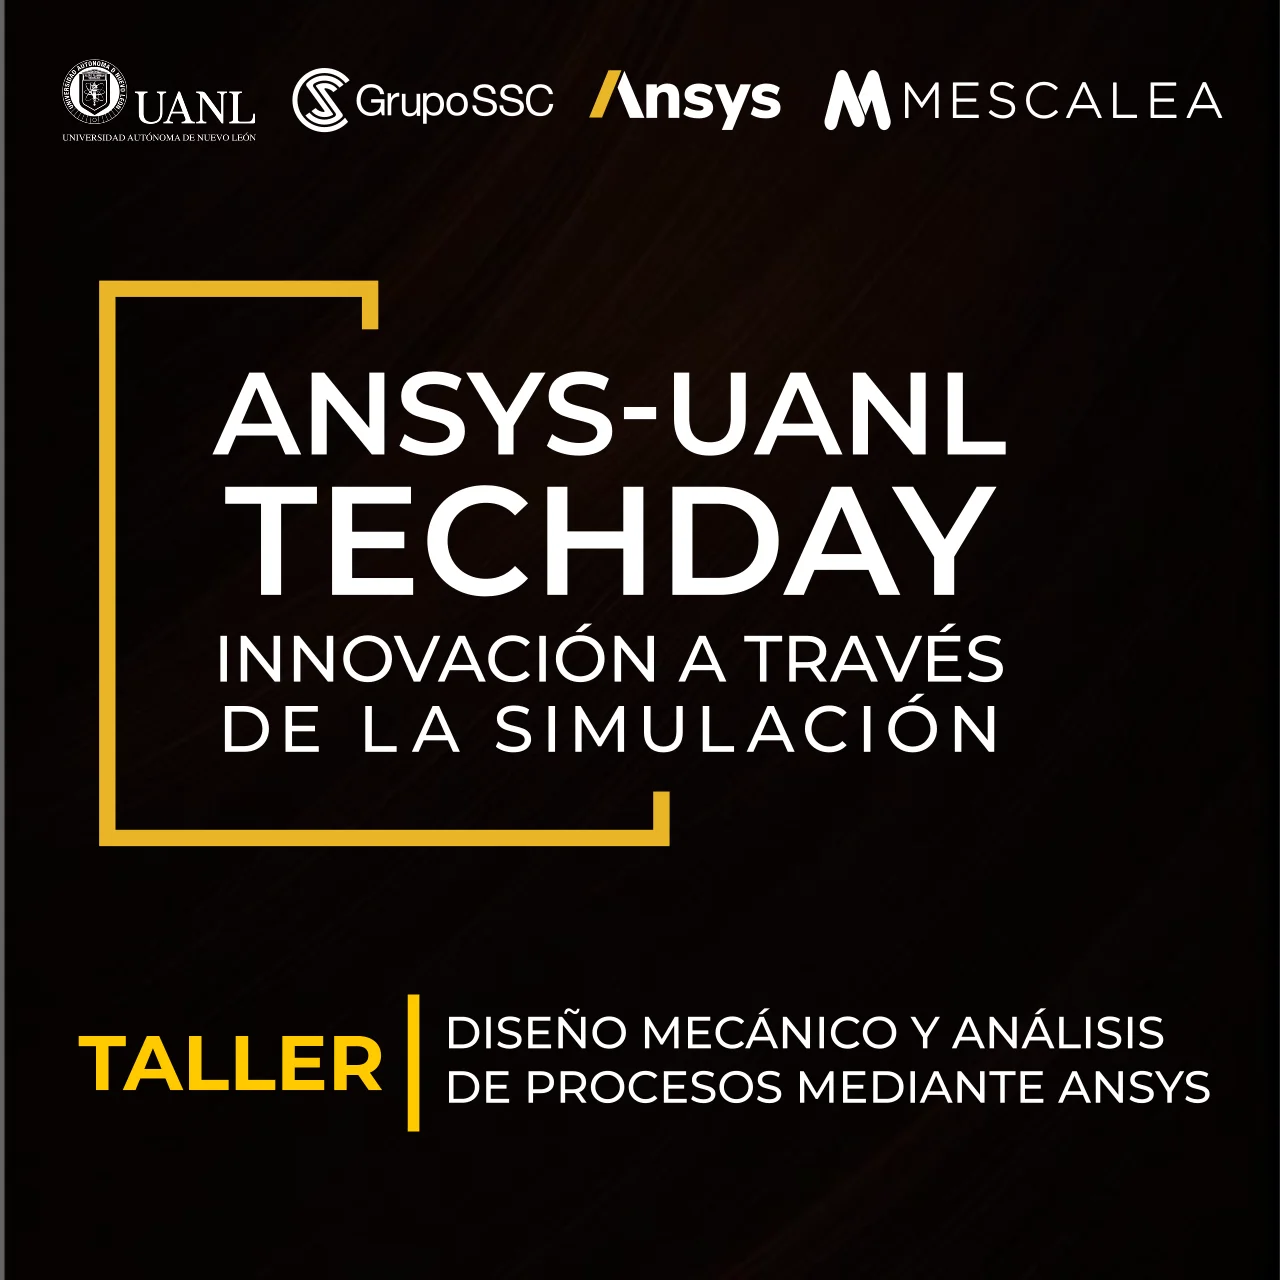 ANSYS-UANL TECHDAY | Taller Diseño mecánico y análisis de procesos